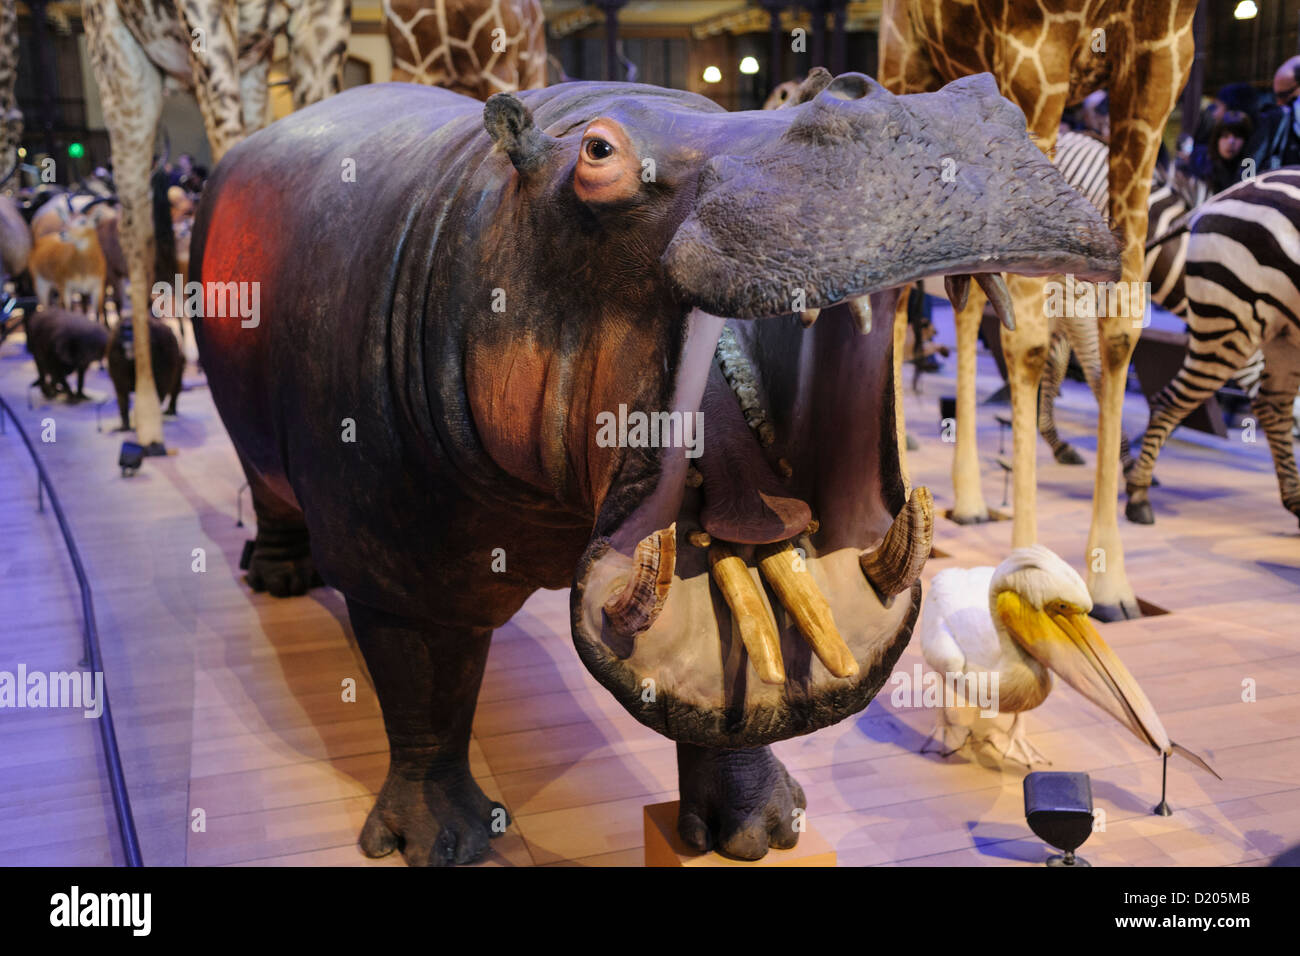 Hippopotame Taxidermied, Grande Galerie de l'évolution (Grande Galerie de l'évolution), Musée d'Histoire Naturelle, Paris, France Banque D'Images